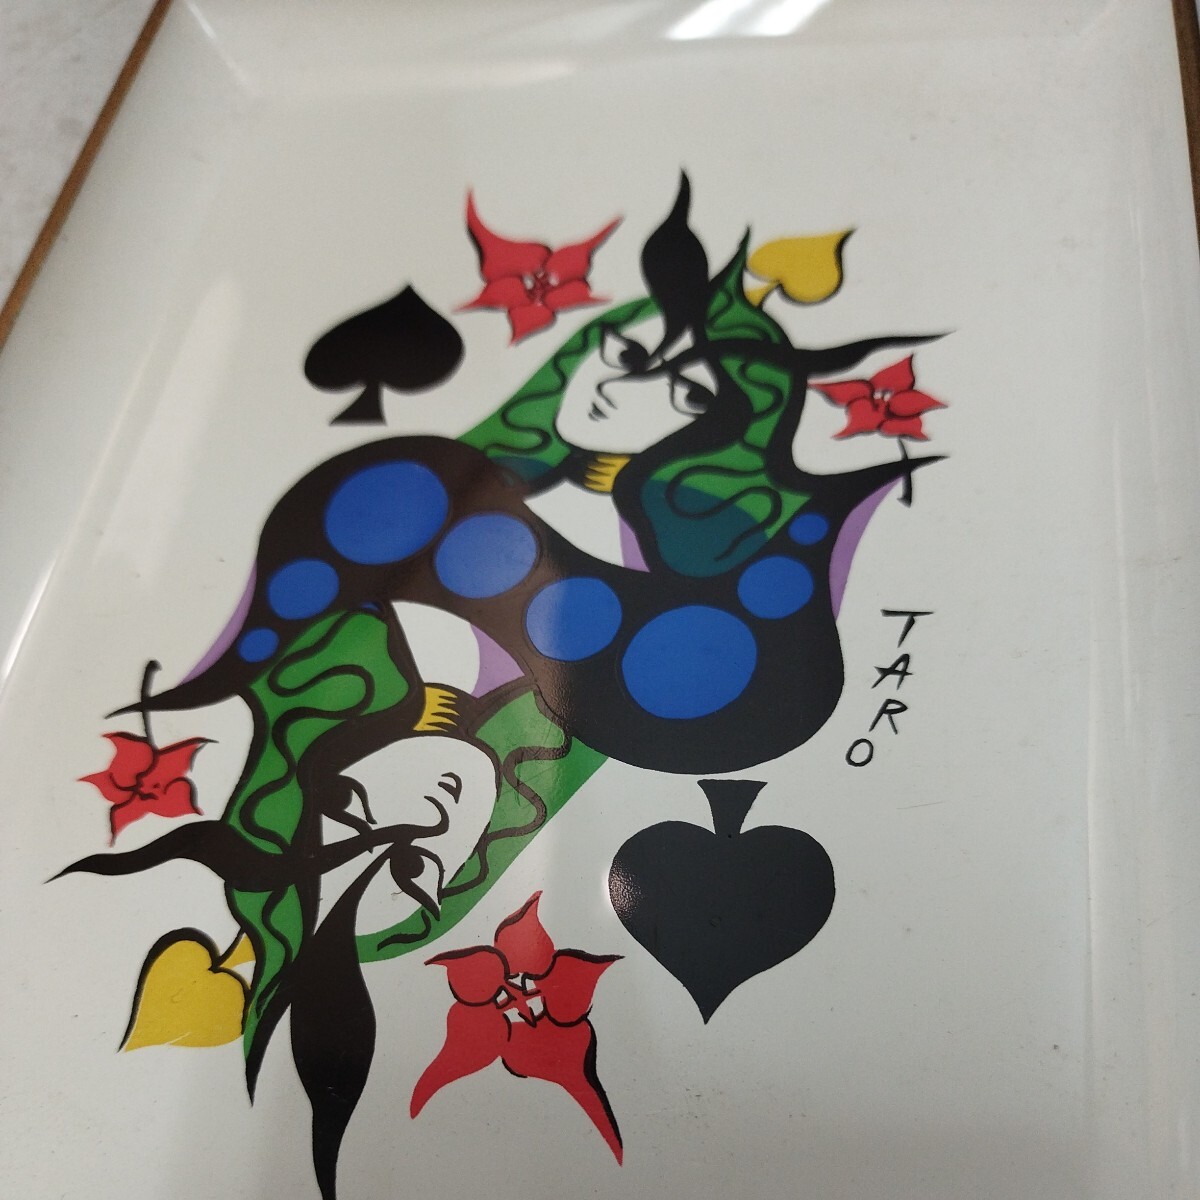  Okamoto Taro TARO карты дизайн O-Bon tray украшение интерьер [ кошка pohs ]